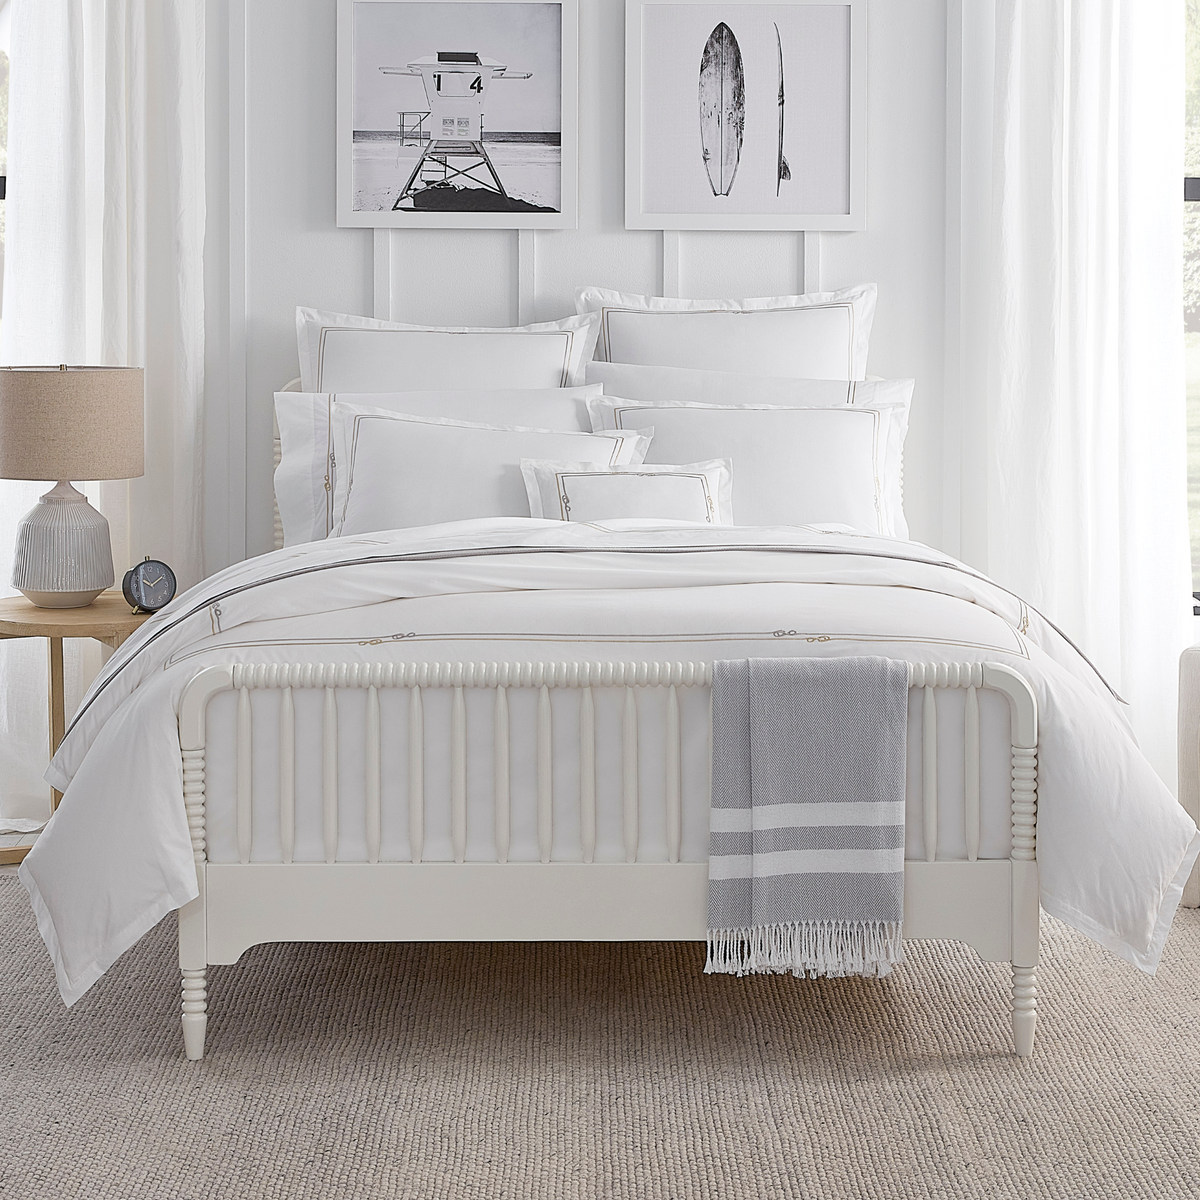 Sferra Squillo Bedding Full Lifestyle Image White/Platinum